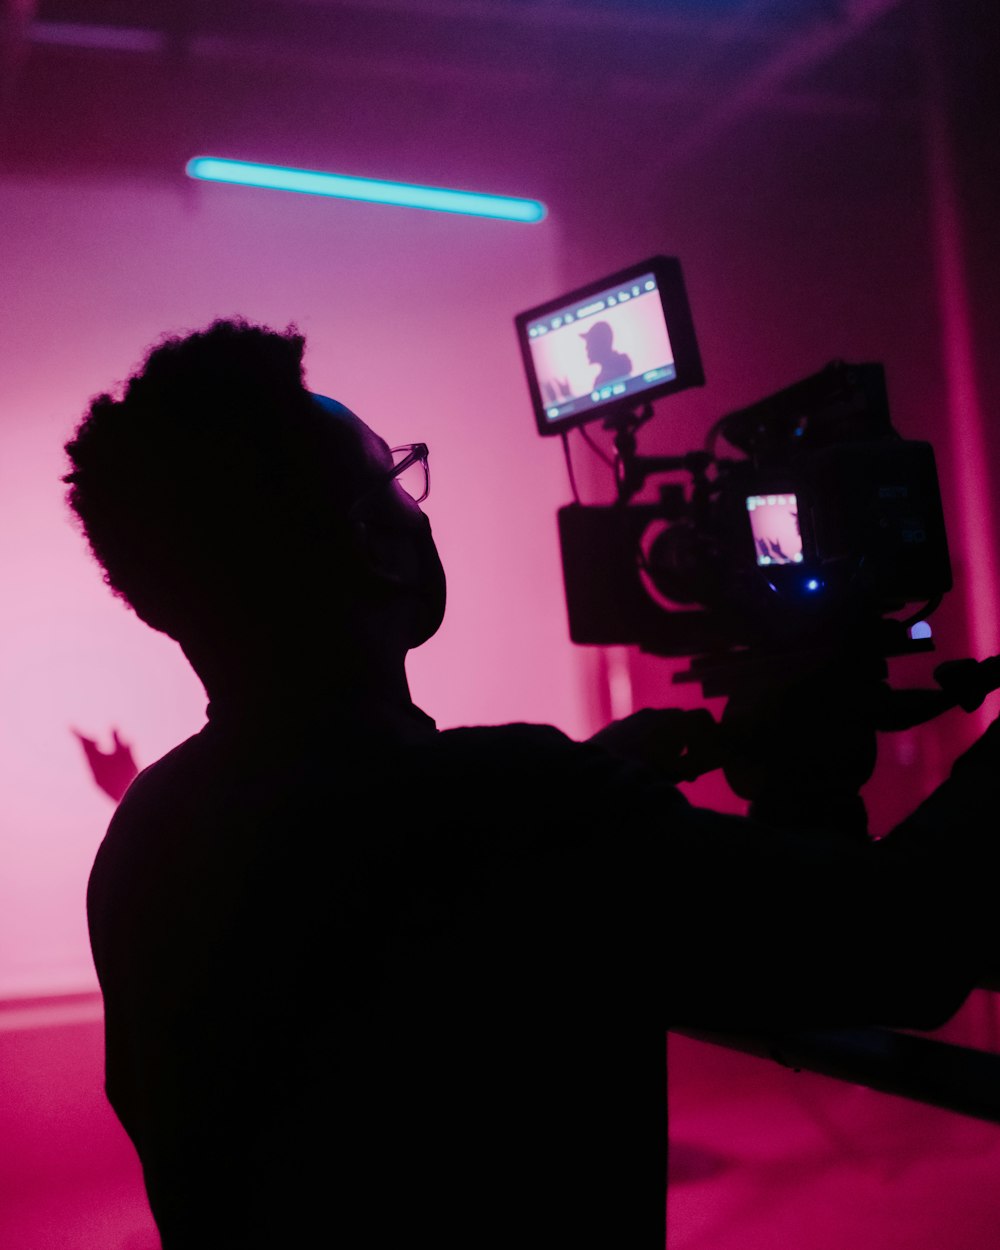 Un hombre sosteniendo una cámara de video en una habitación oscura